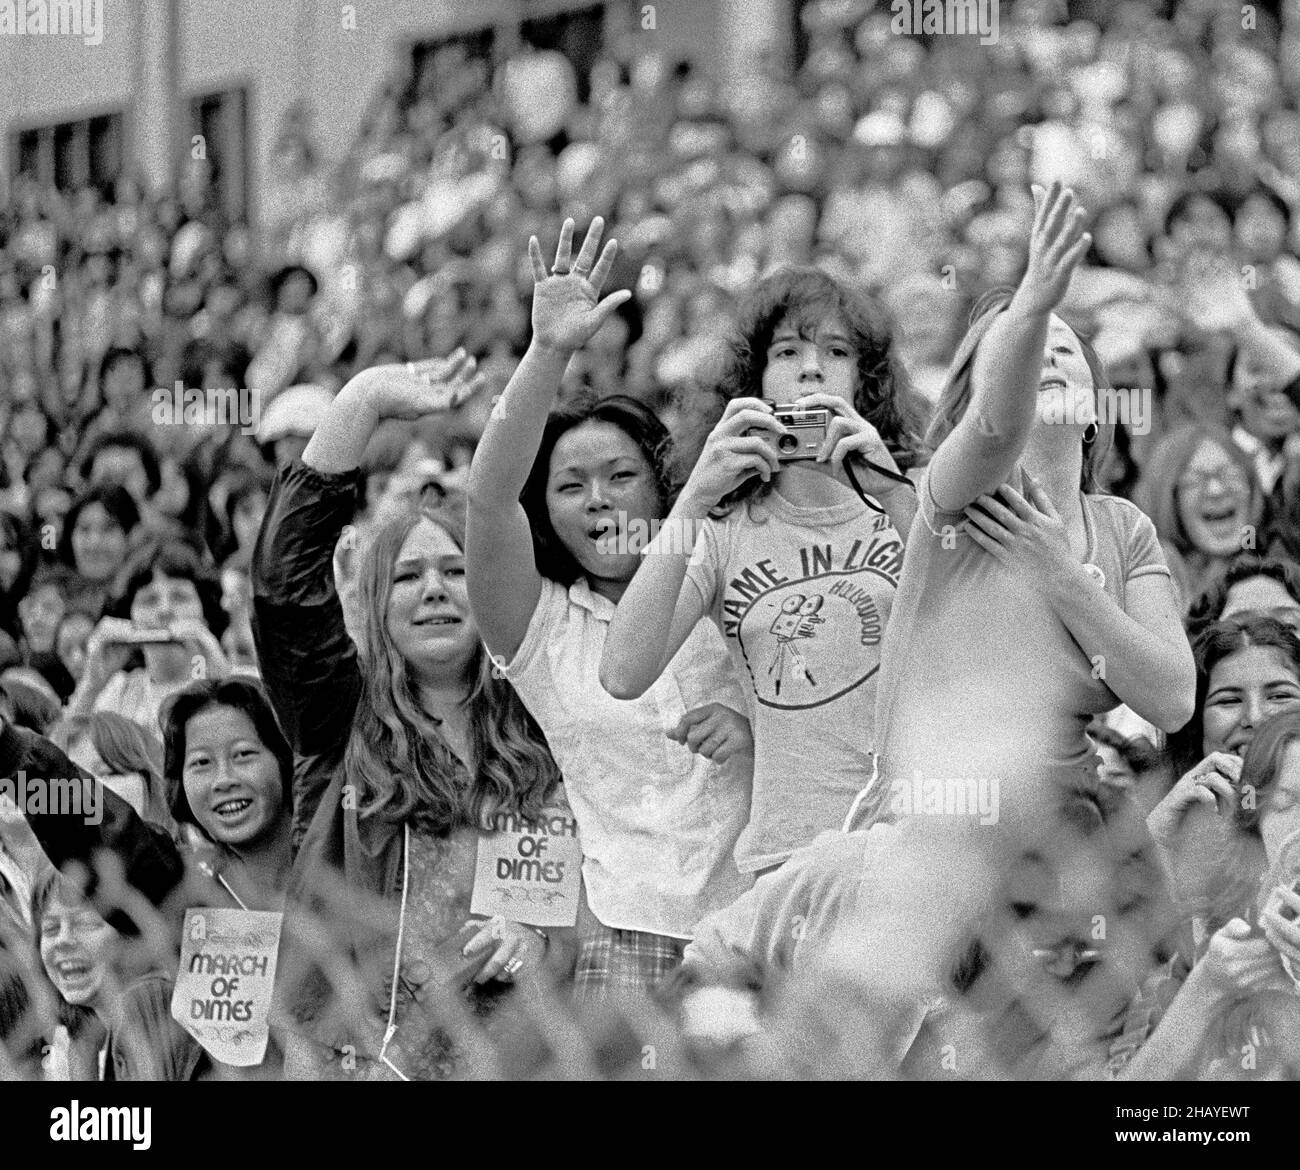 Les participants acclament Andy Gibb du groupe rock Bee Gees au stade Kezar lors de la marche annuelle March of Dimes Fundraiser Walkathon à San Francisco, Californie, 1978 Banque D'Images